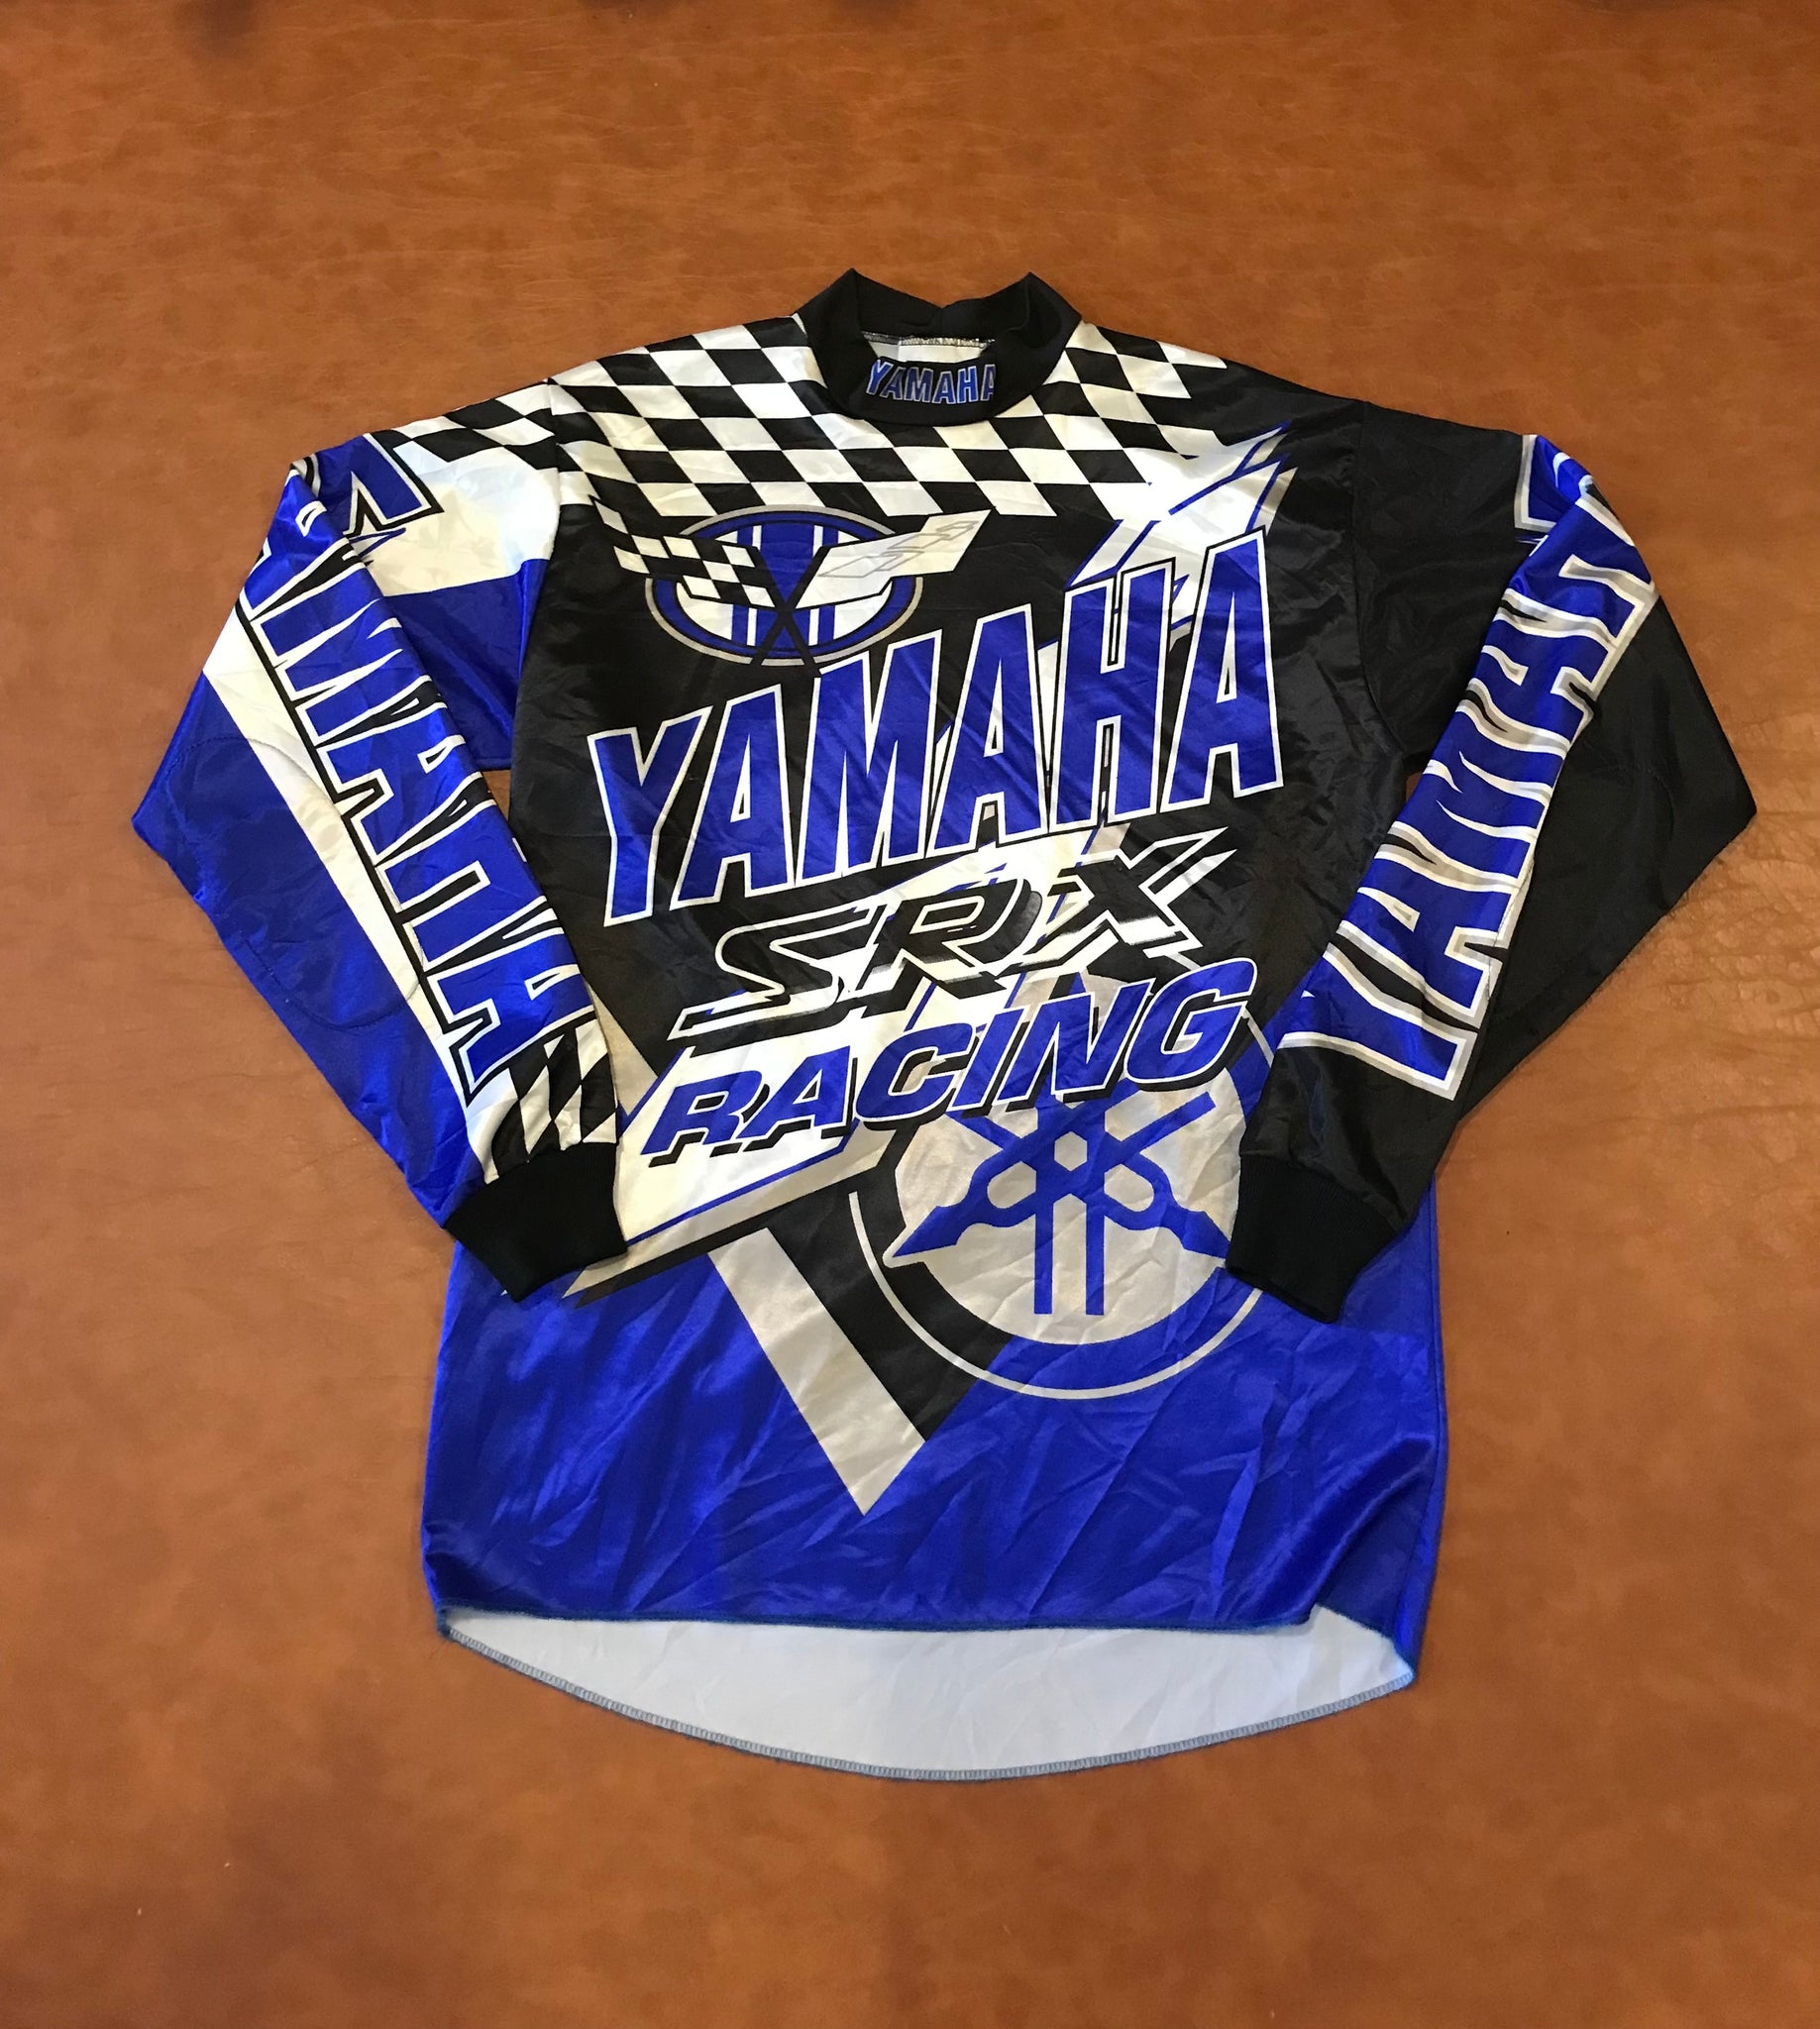 YAMAHA official jersey